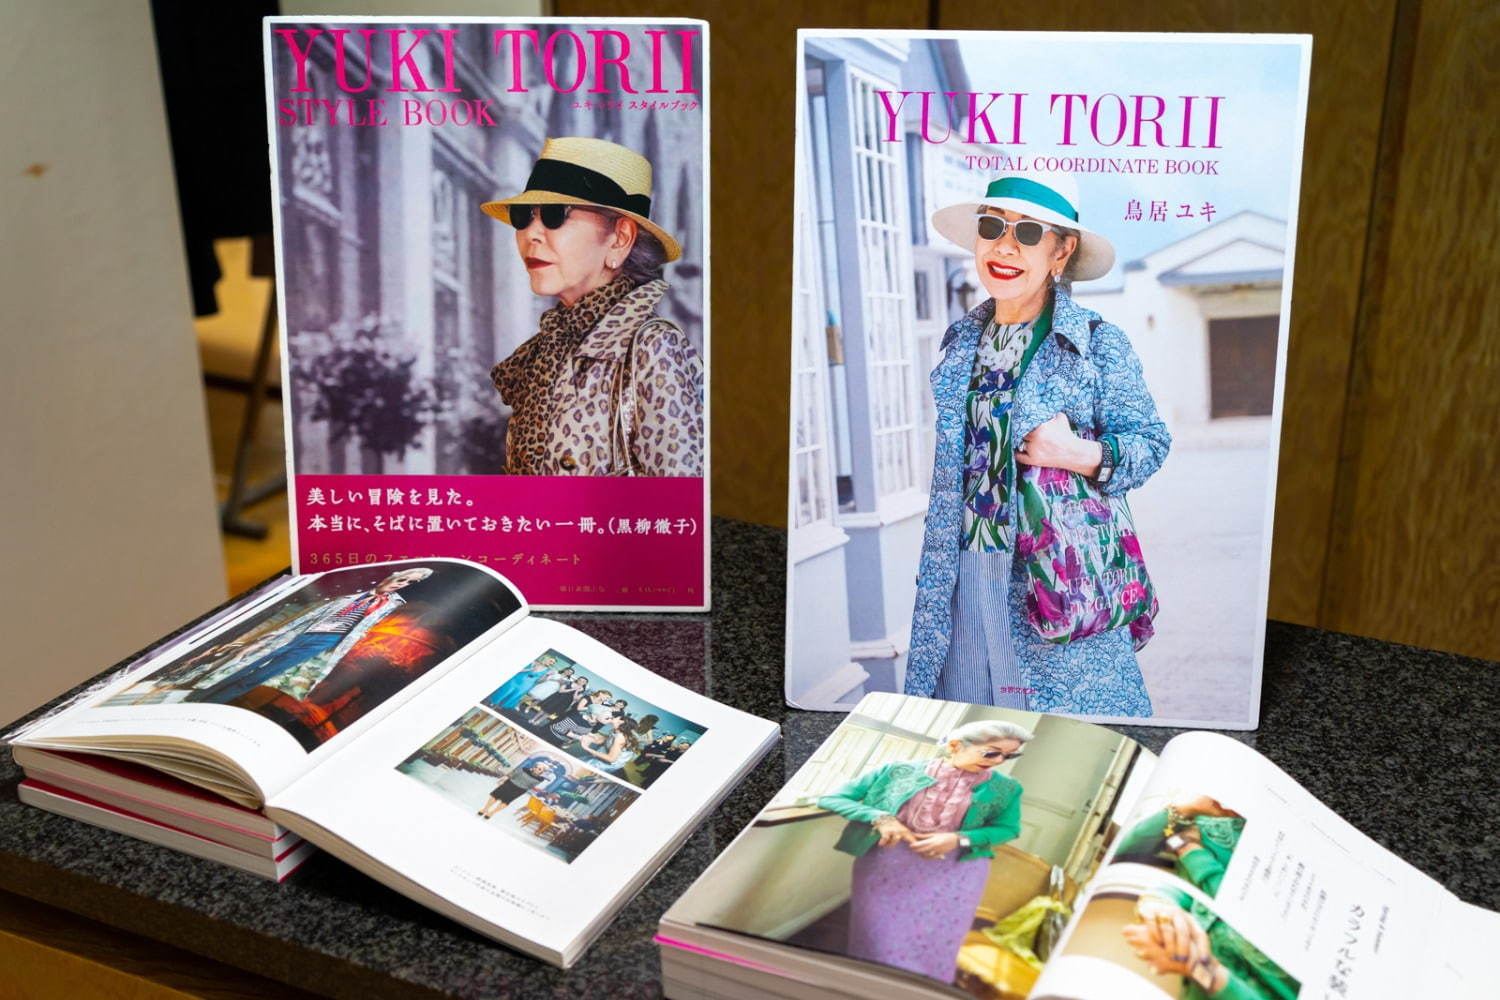 鳥居ユキの着こなしを参考にする顧客も多い。
2018年には2冊目のトータルコーディネートブックを発売した。(右側)